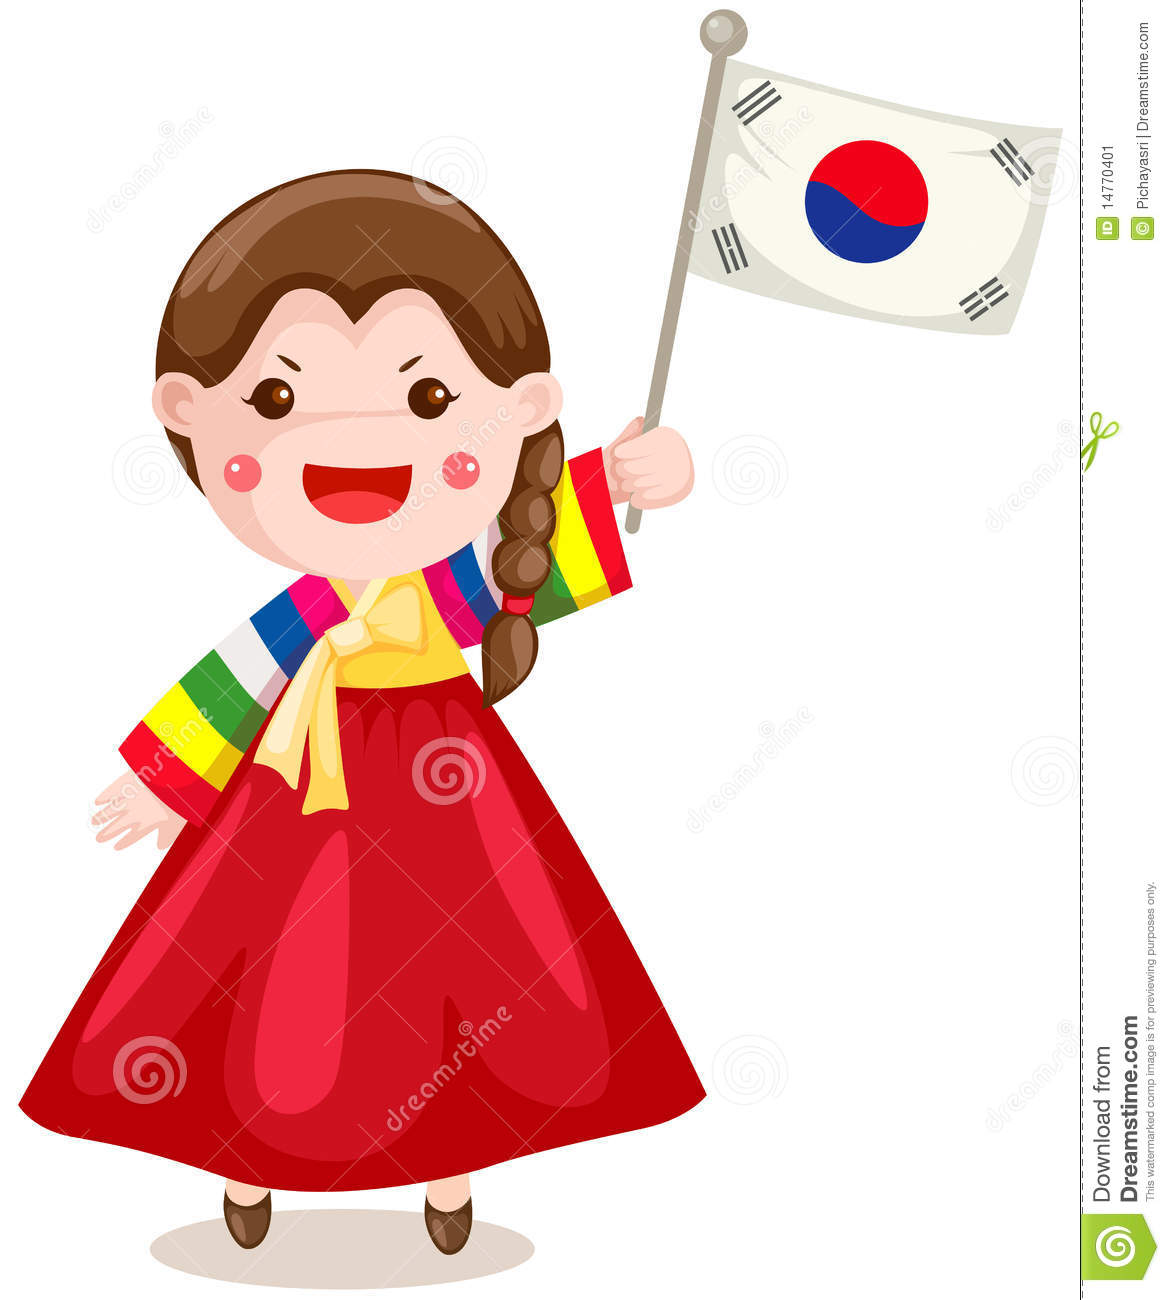 Korean Girl Holding Flag On White Stock Image   Image  14770401